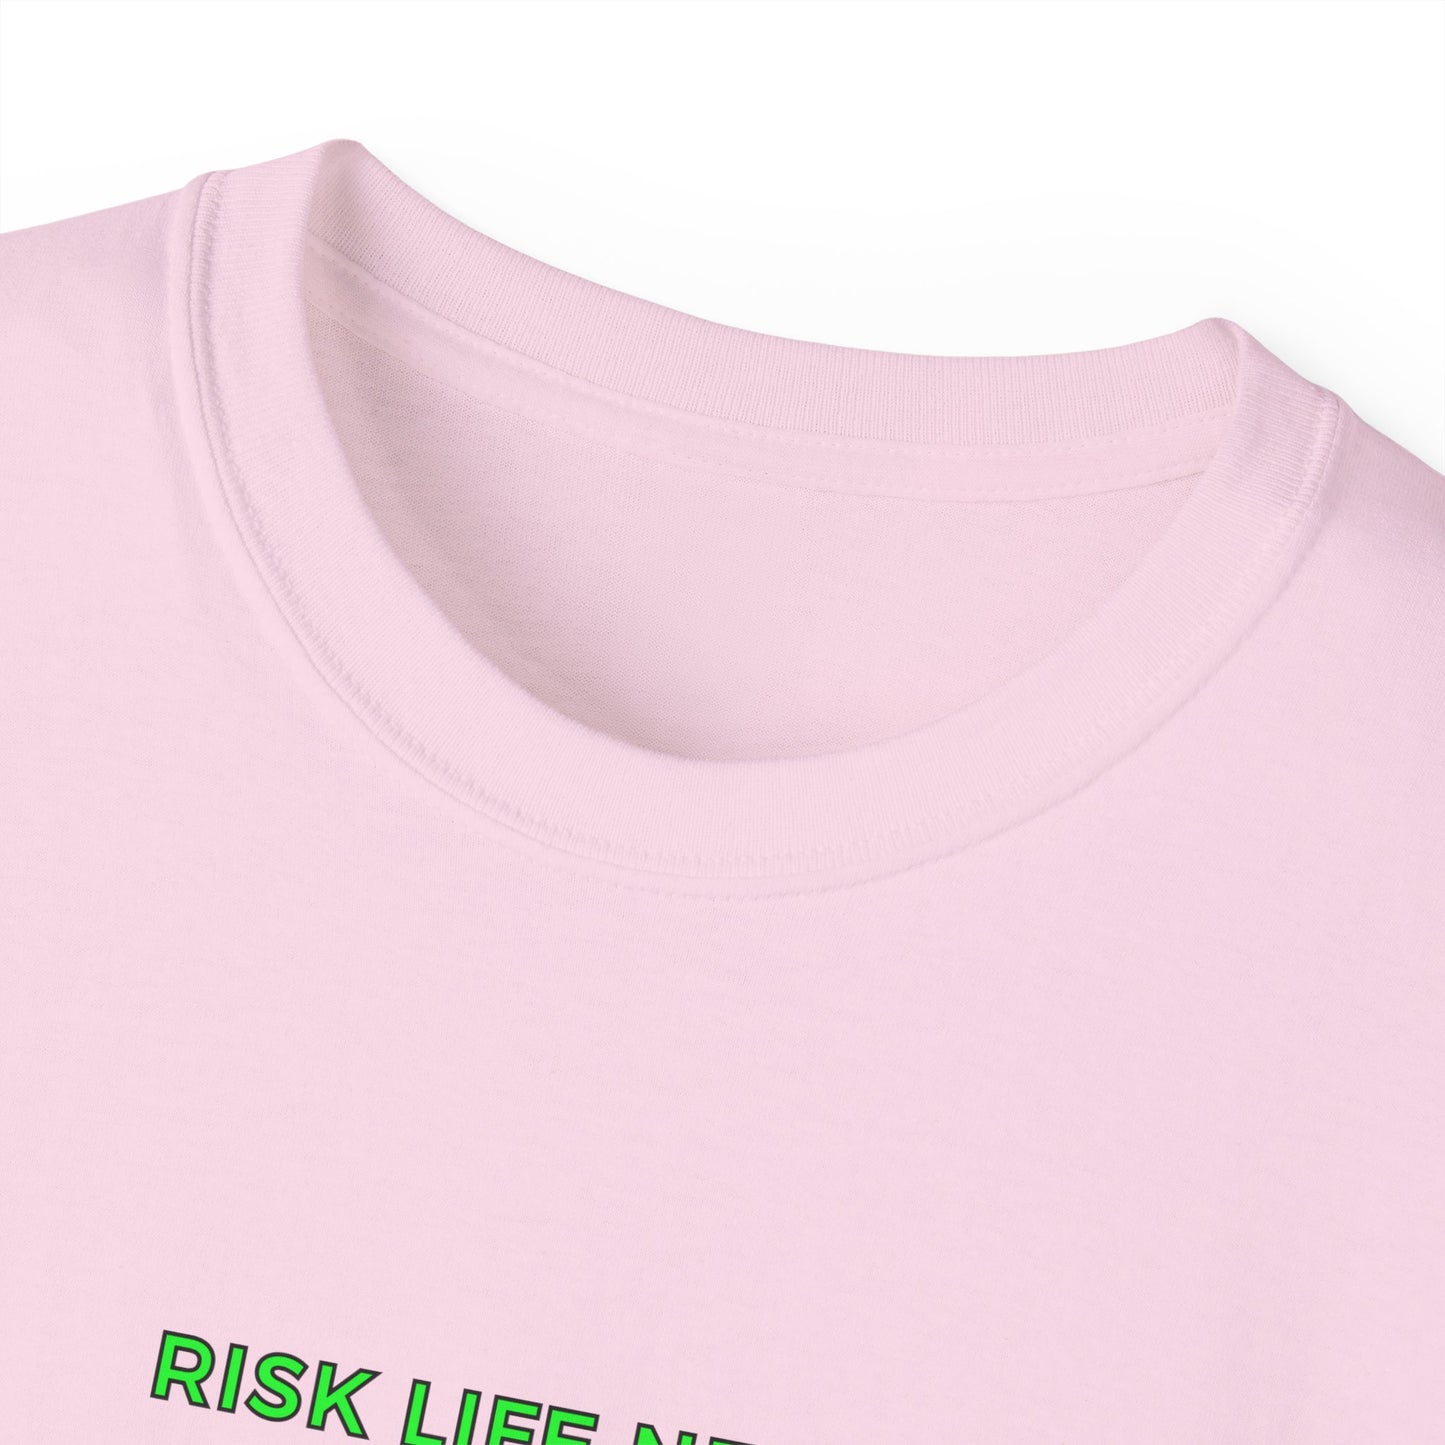 Risk Life News Text T-Shirt